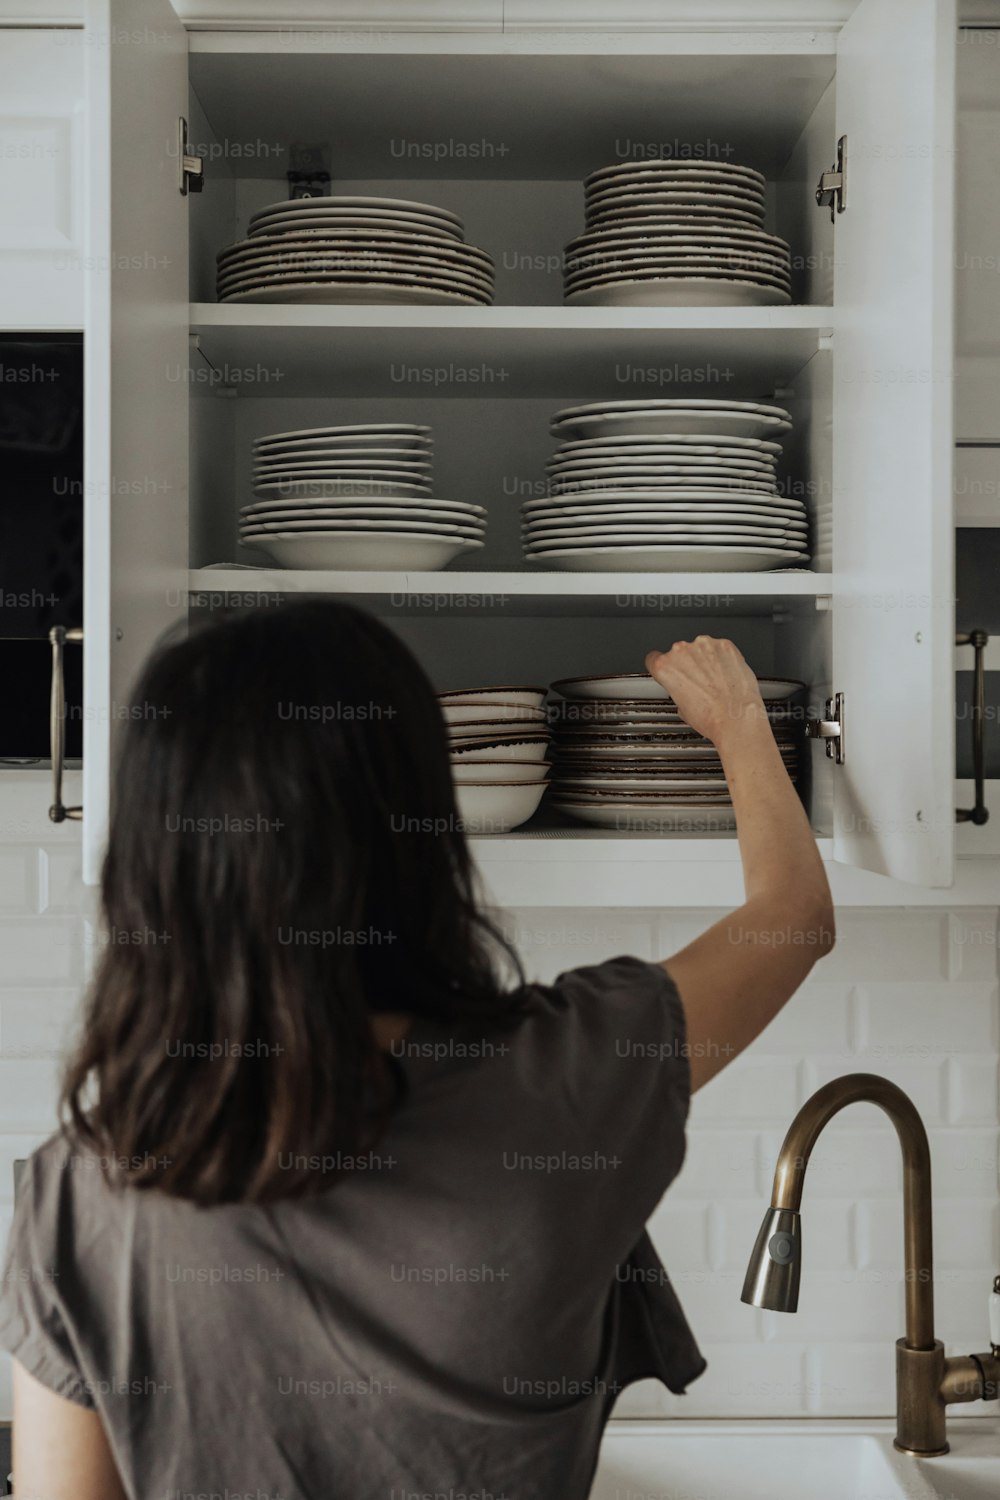 Eine Frau stellt Geschirr in einen Schrank